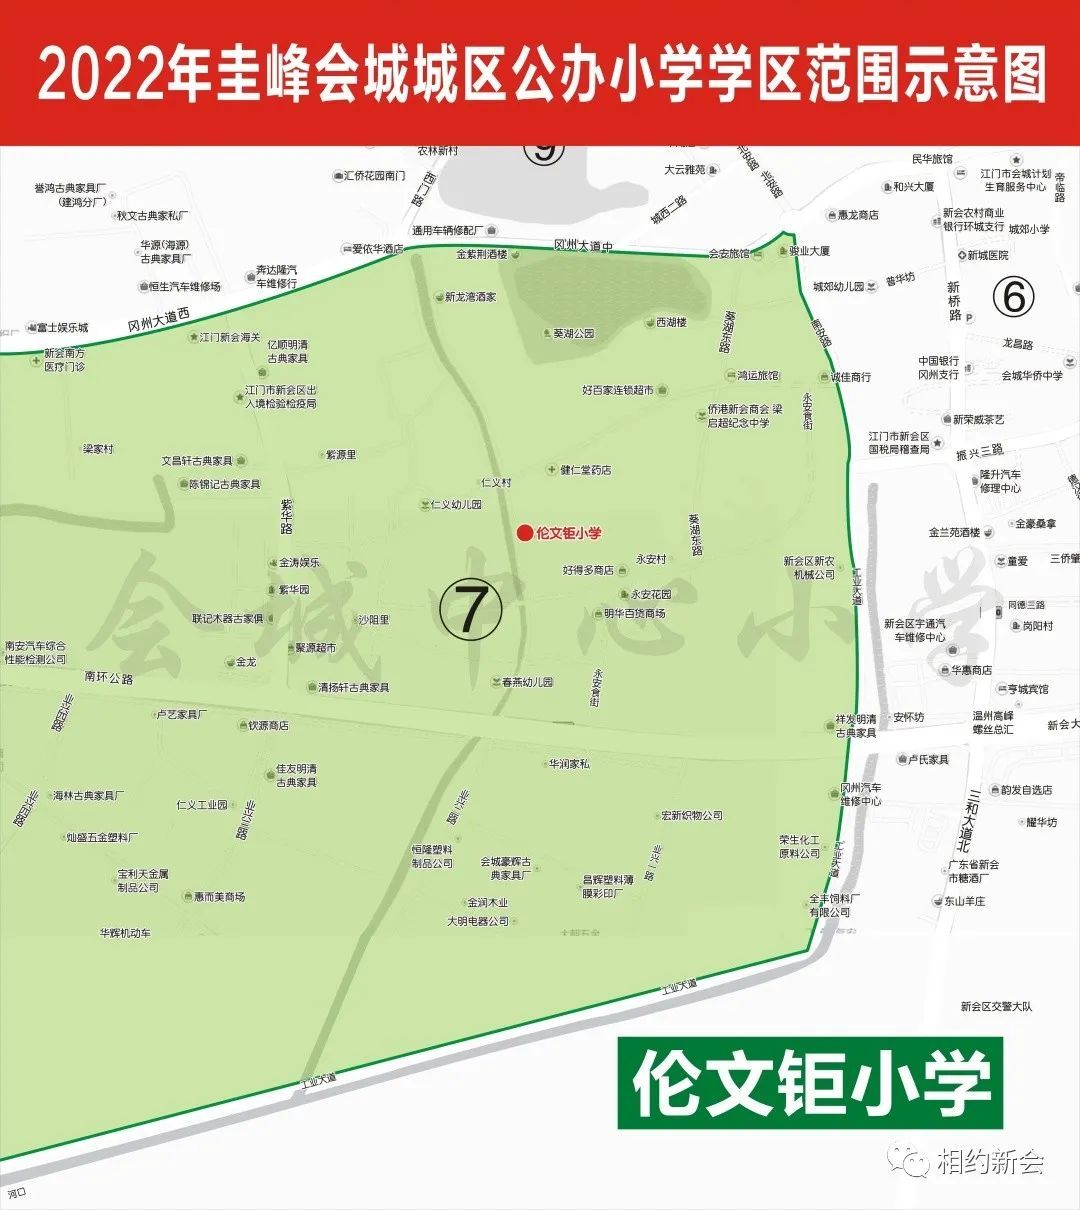 2022年新会圭峰会城地区公办小学 初中学区划分